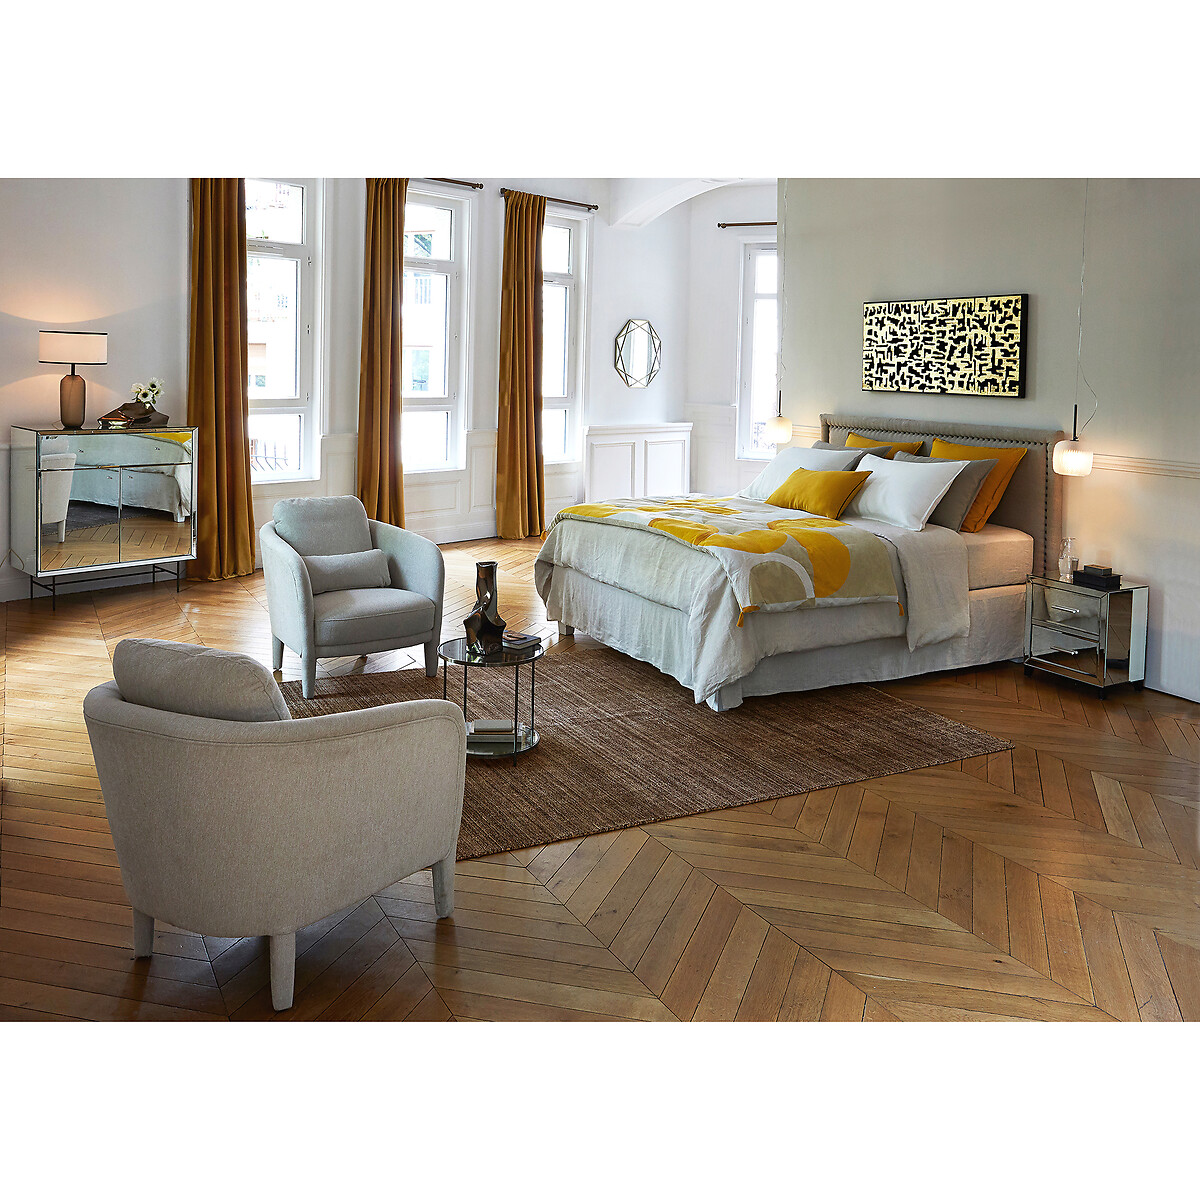 Чехол La Redoute Для кровати  льна 90 x 190 см серый, размер 90 x 190 см - фото 3